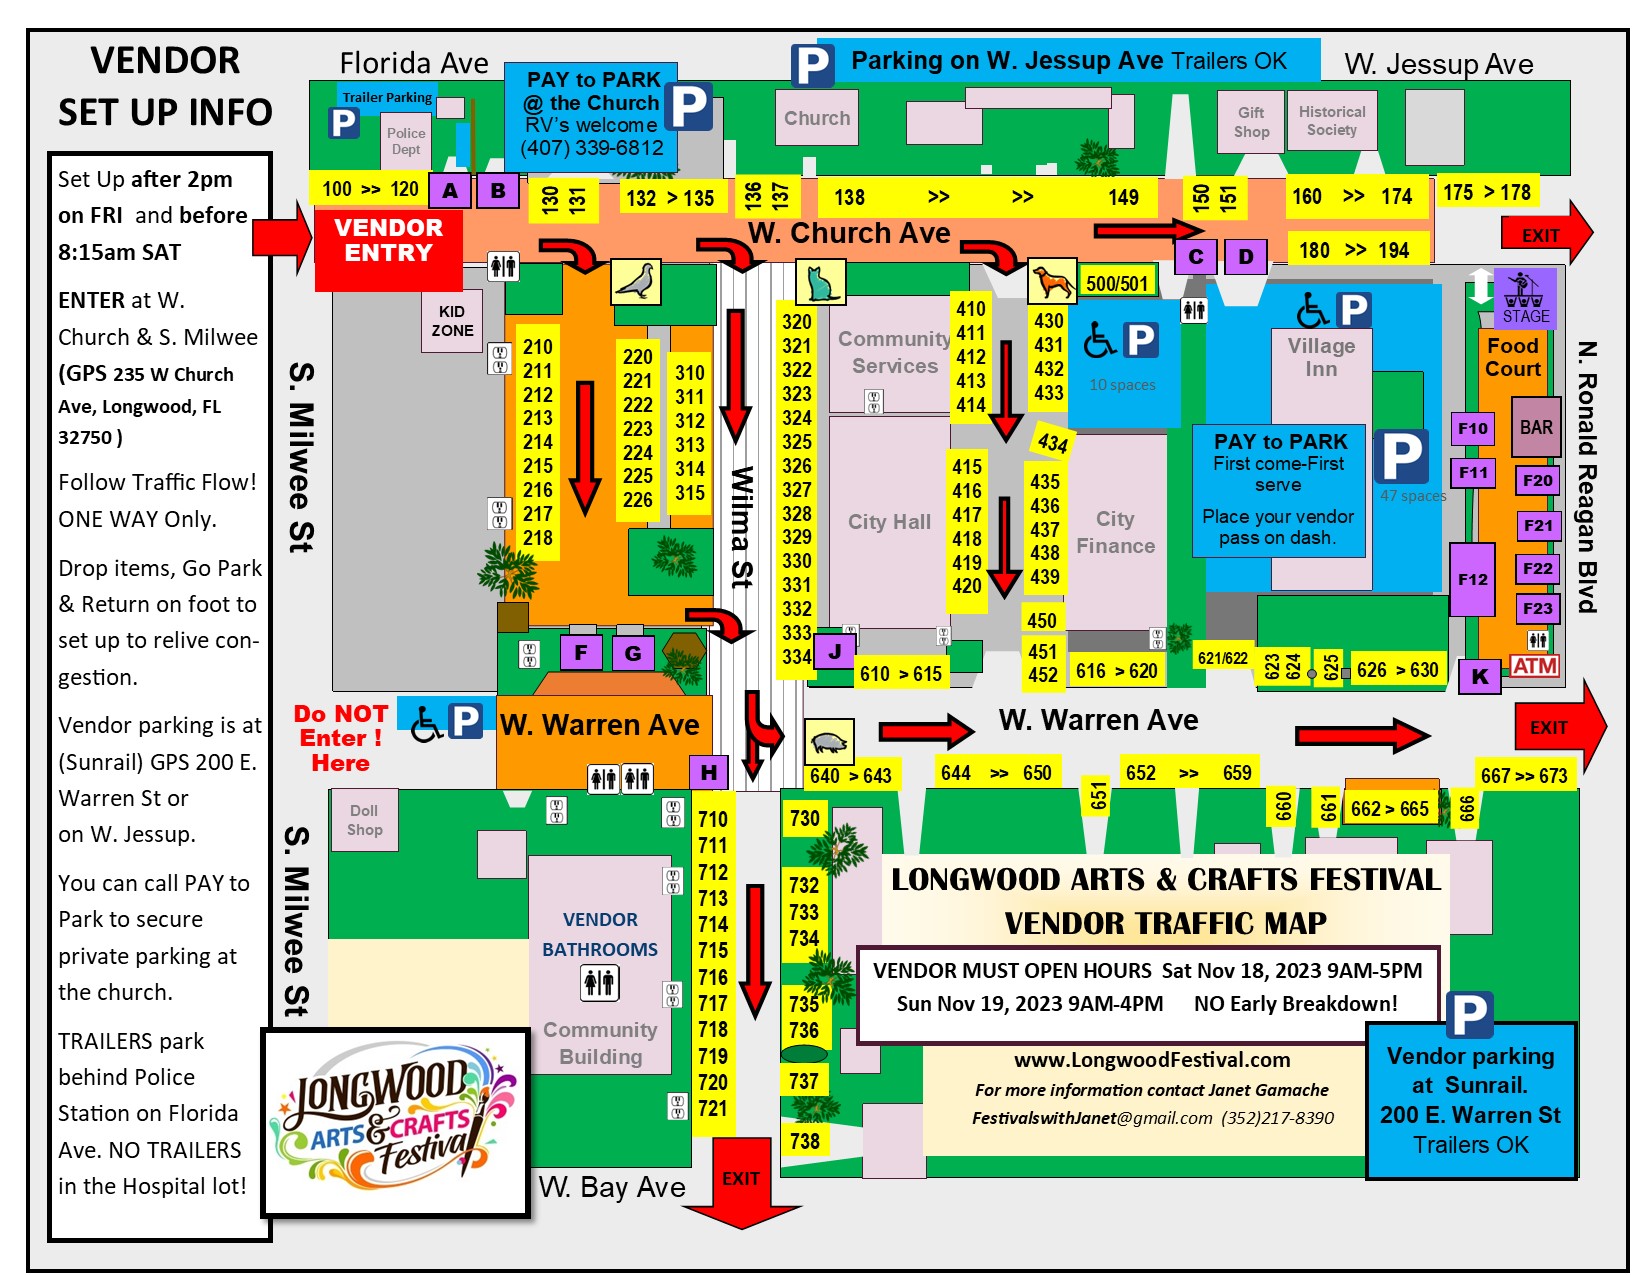 Longwood Arts 2023 Vendor TRAFFIC MAP 3 